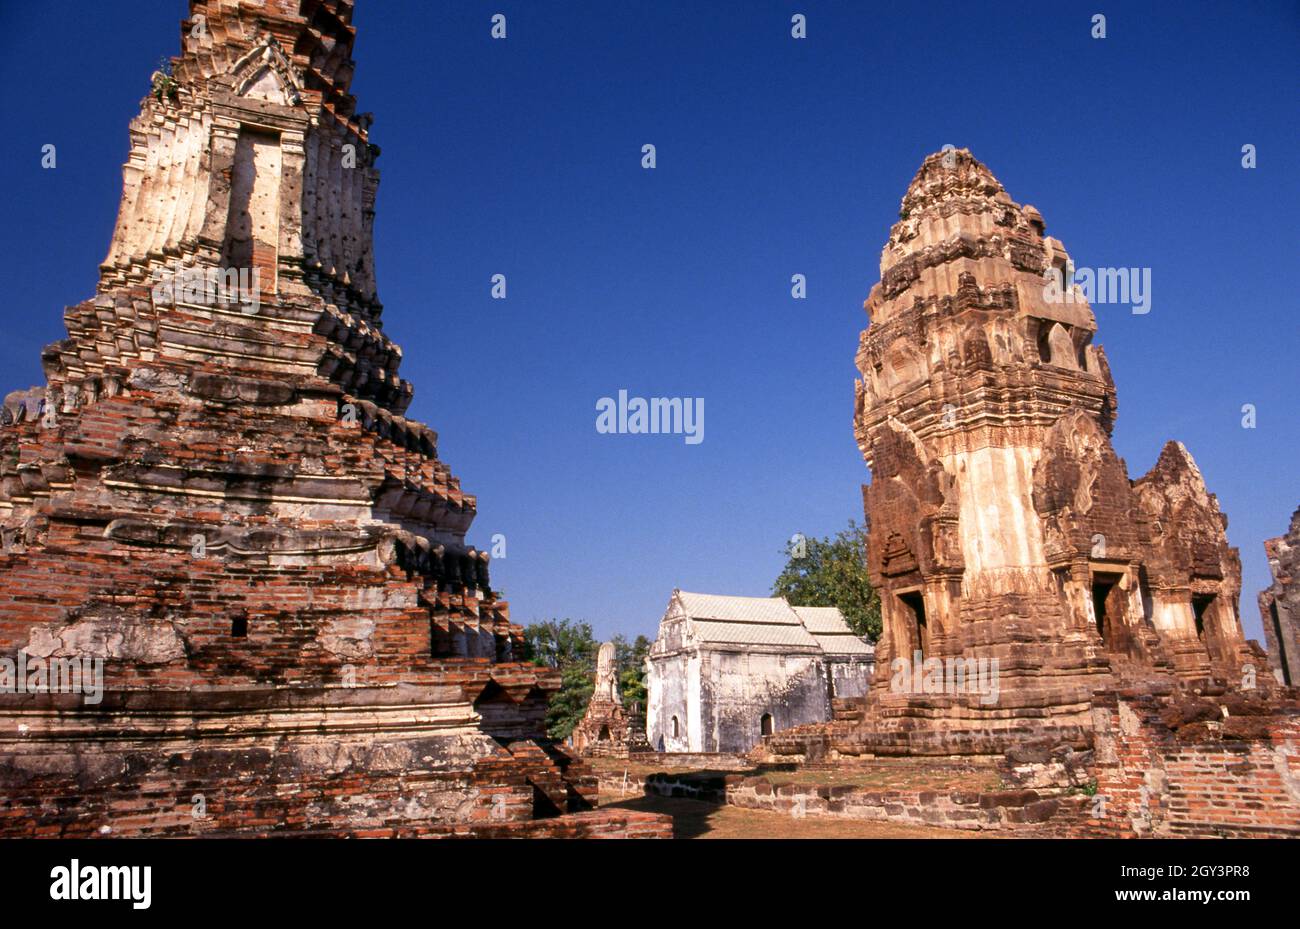 Thailandia: Le rovine del 12 ° secolo di Wat Phra si Rattana Mahathat, Lopburi. Il centro storico di Lopburi risale all'epoca dei Dvaravati (VI-XIII secolo). Originariamente era conosciuto come Lavo o Lavapura. Dopo la fondazione del regno di Ayutthaya nel XV secolo, Lopburi era una roccaforte dei governanti di Ayutthaya. In seguito divenne una nuova capitale reale durante il regno di re Narai il Grande del regno di Ayutthaya a metà del XVII secolo. Foto Stock